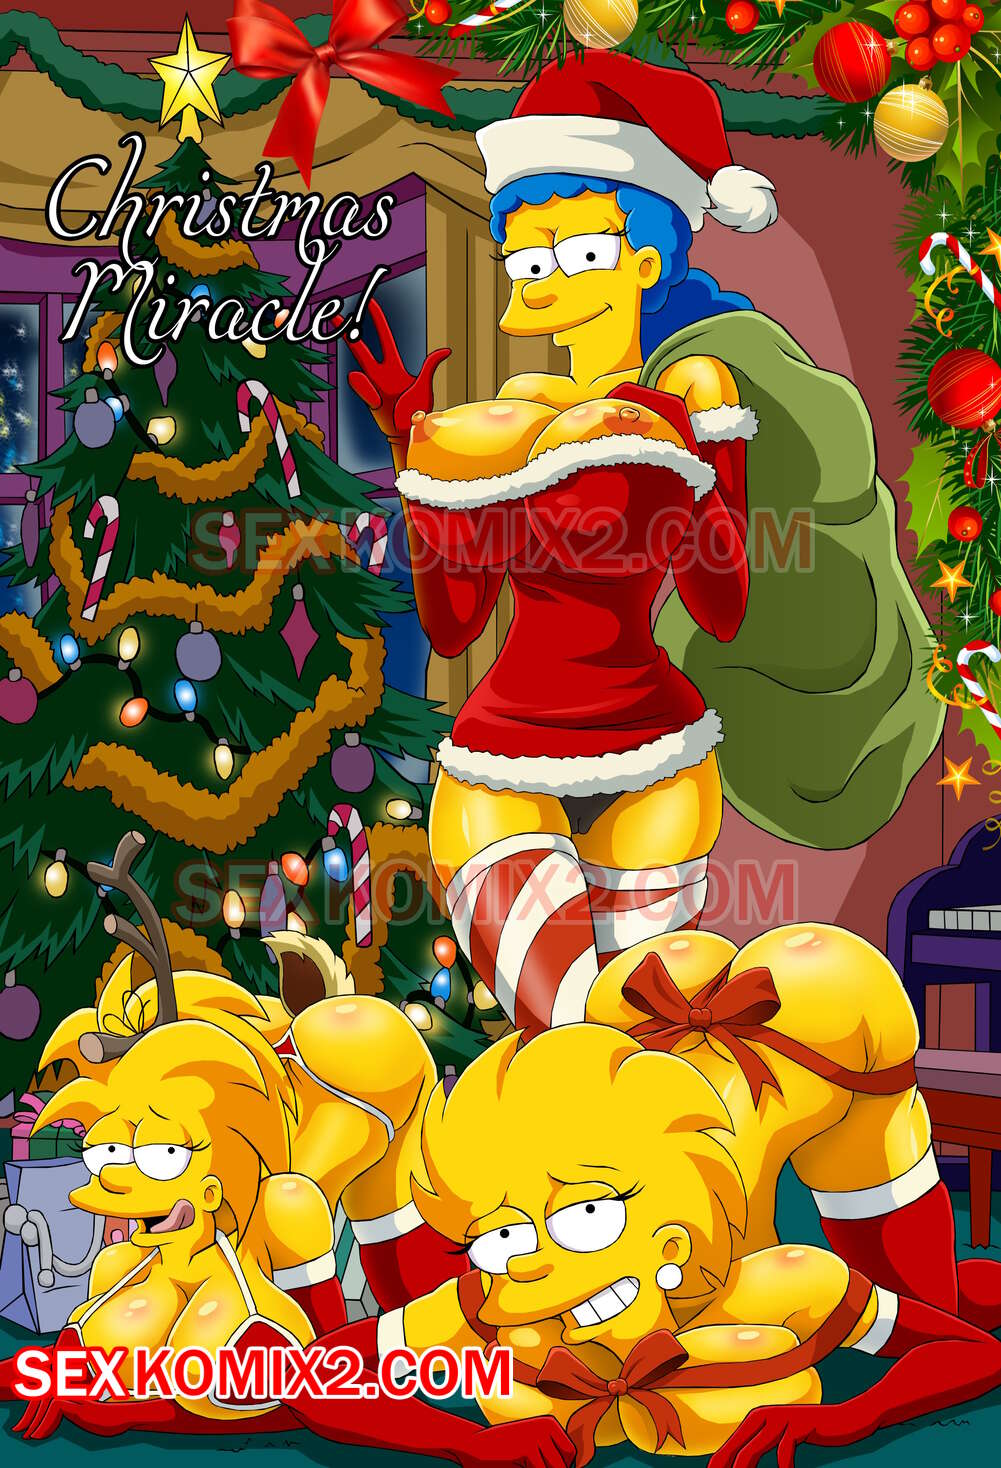 Xxx Parn Photo - âœ…ï¸ Porn comic The Simpsons. Christmas Miracle. by sexkomix2.com. | Comics  porno en espaÃ±ol solo para adultos | sexkomix2.com